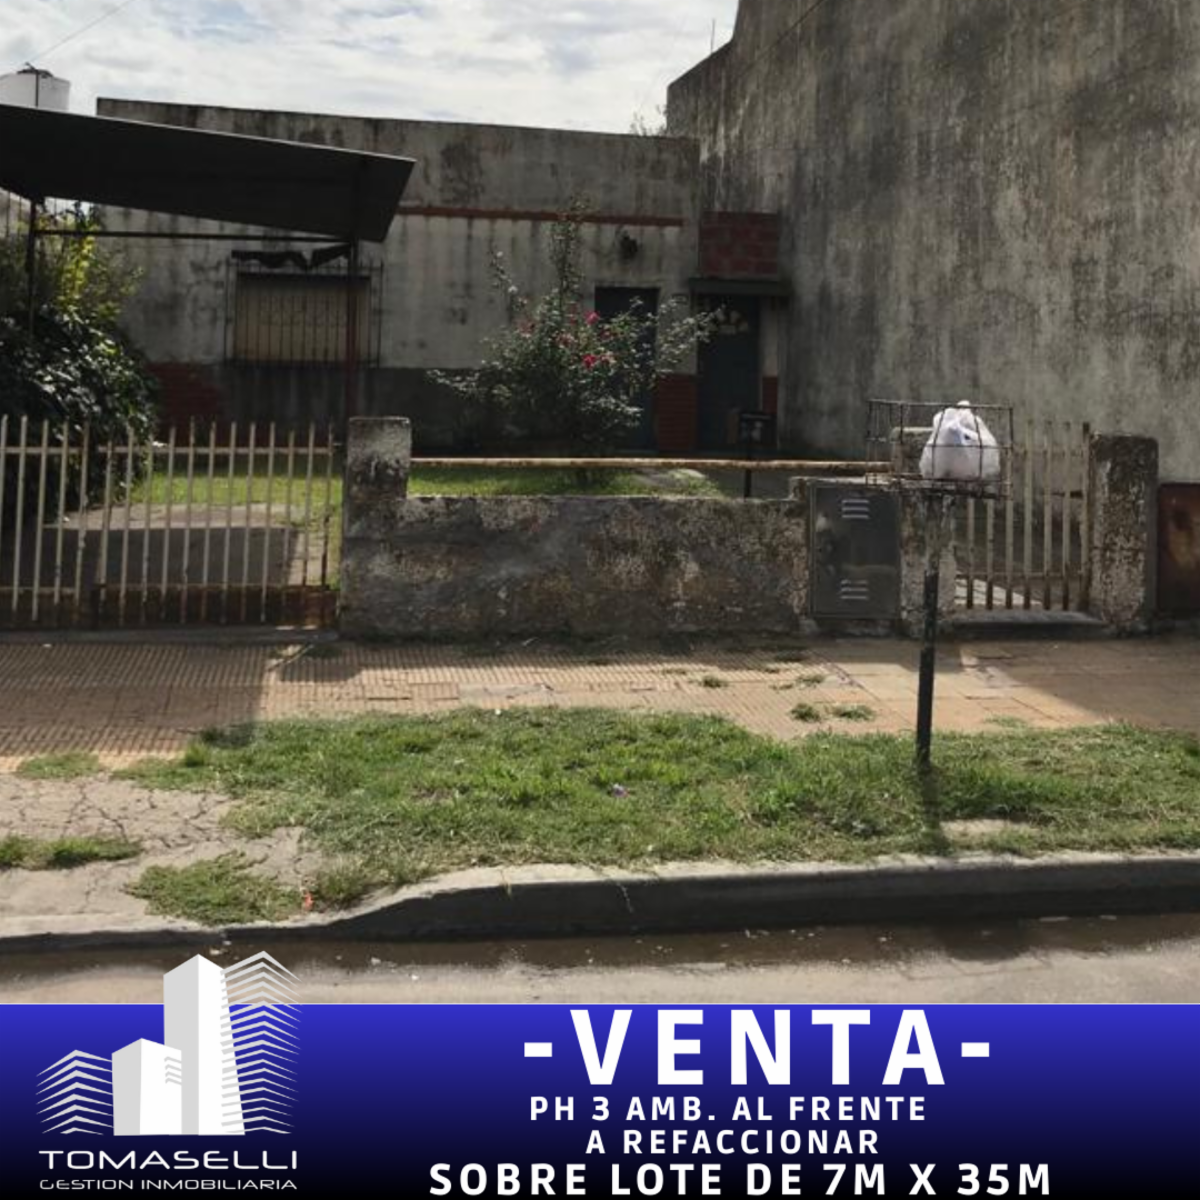 VENTA - VILLA MADERO - PH 3 AMBIENTES AL FRENTE A REFACCIONAR - SOBRE LOTE DE 7.06m x 34.93m